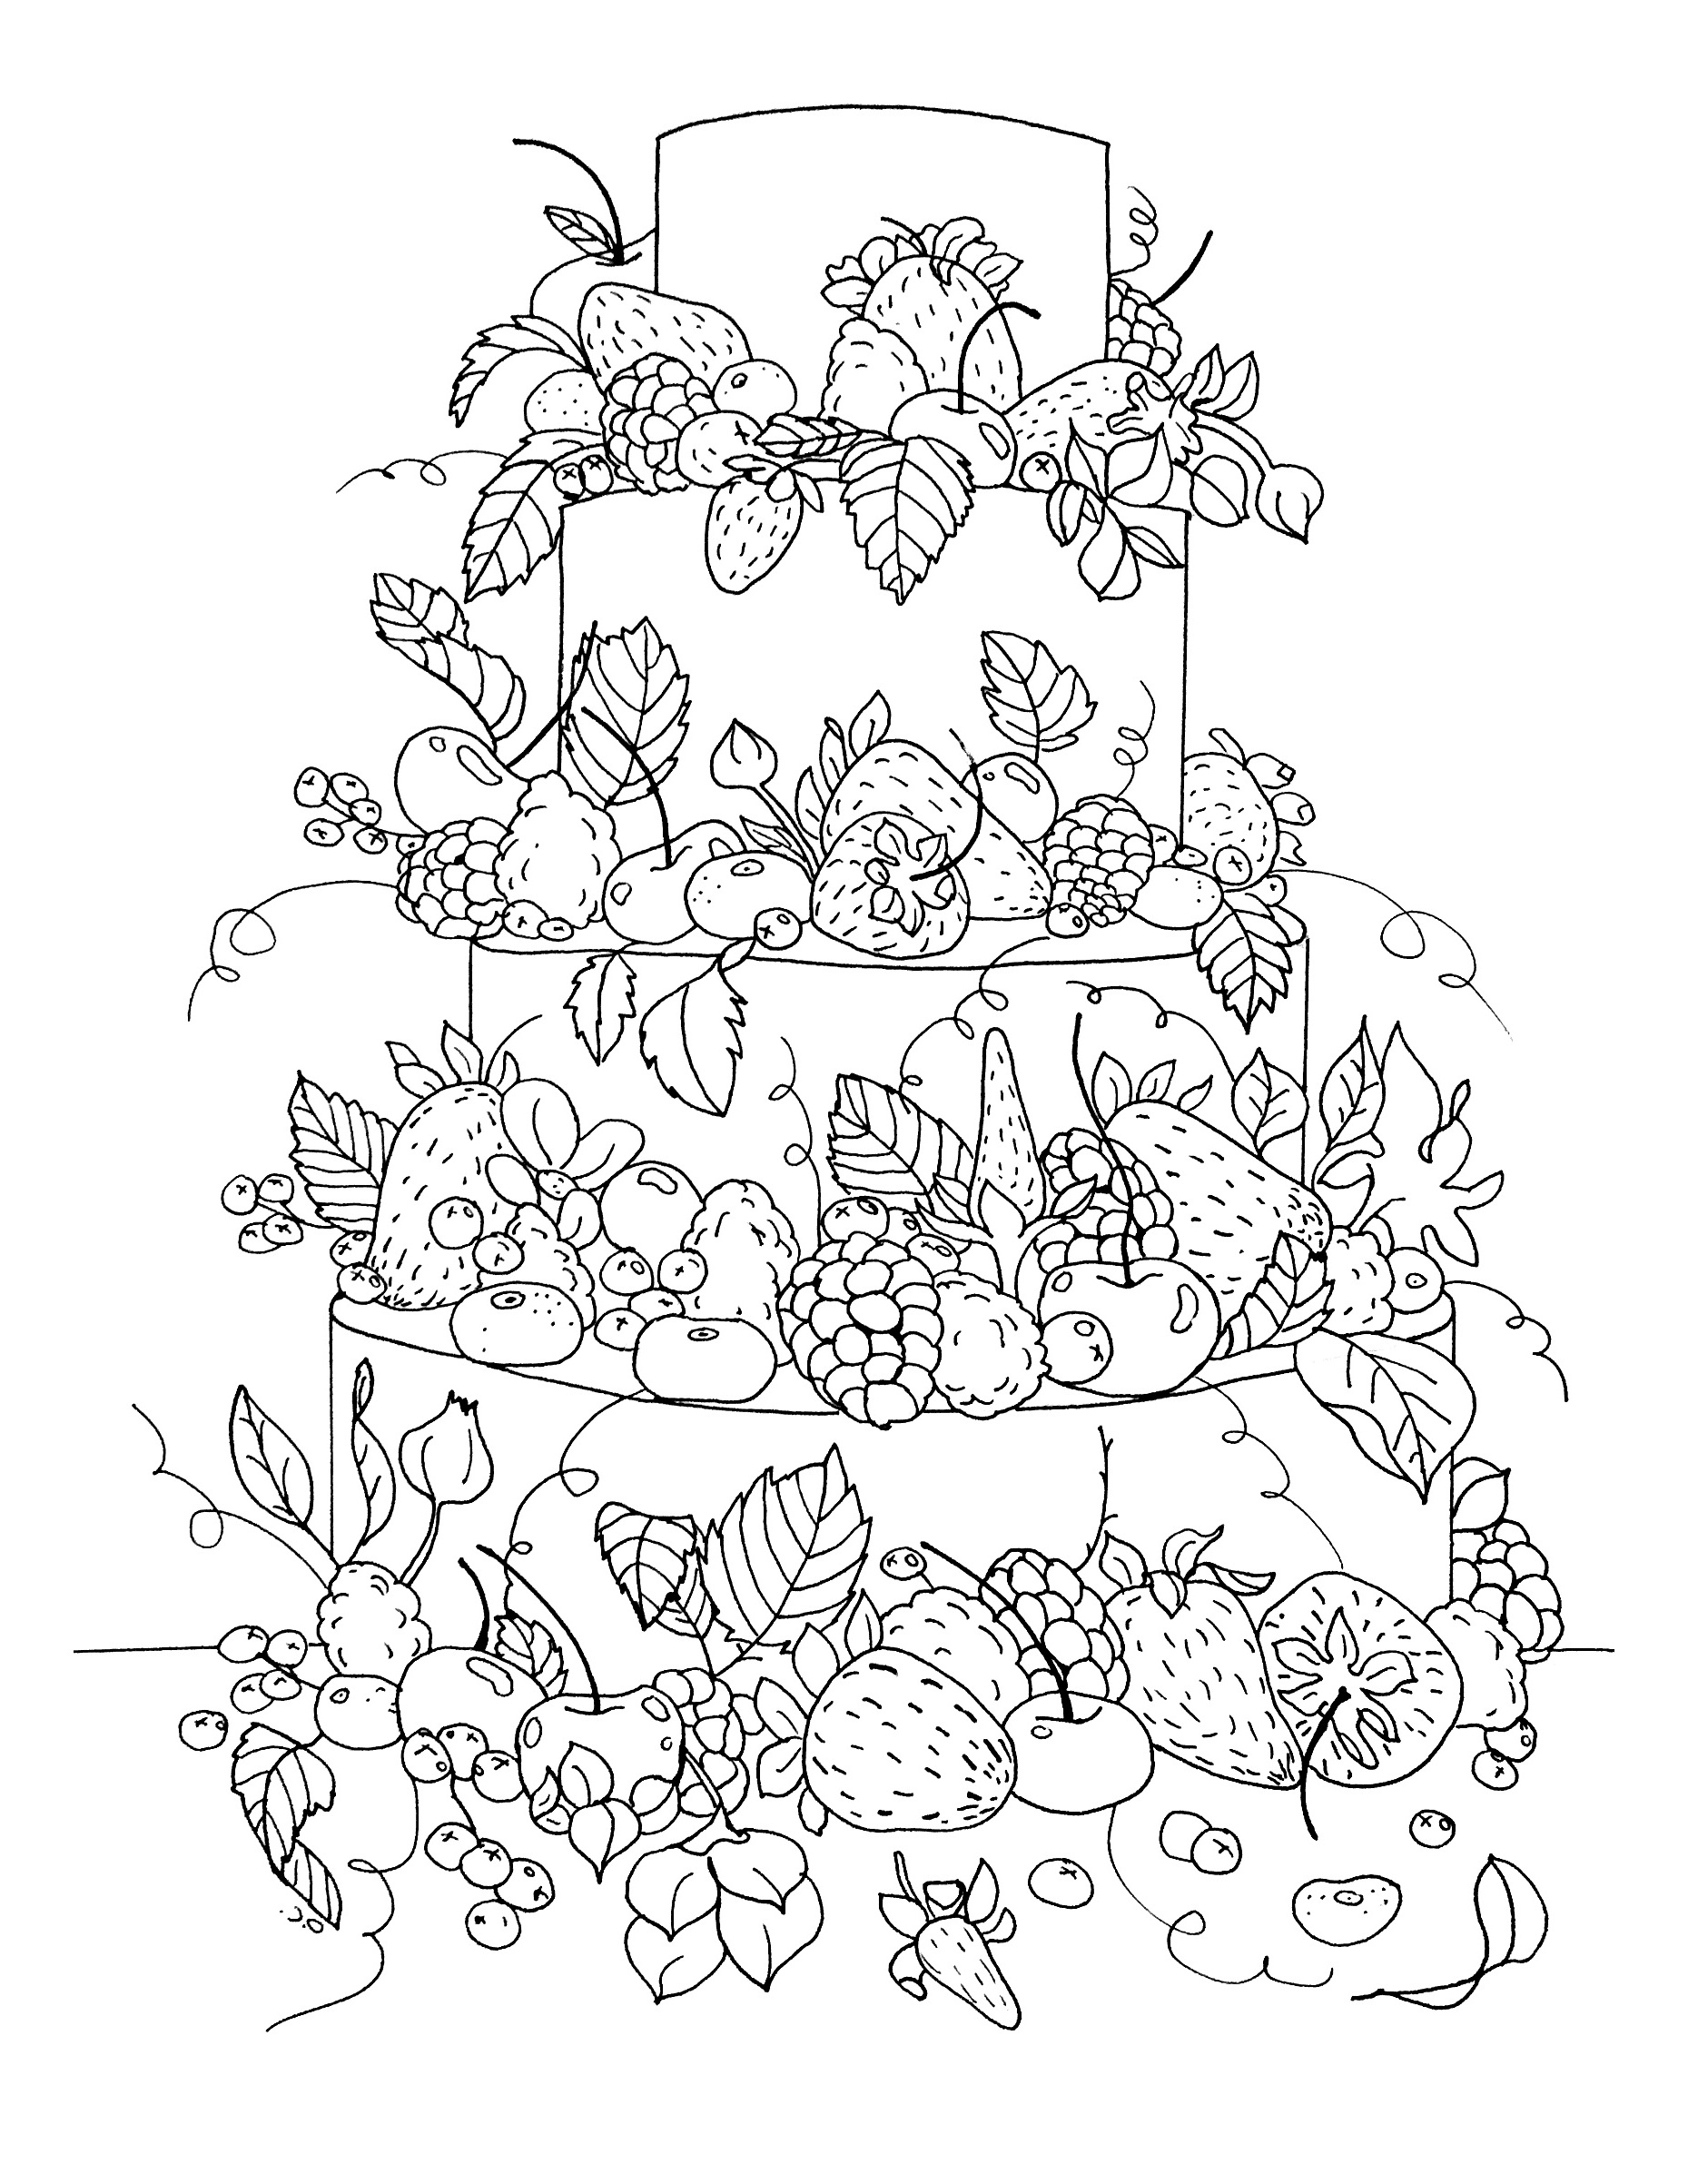 image=cup cakes coloriage gros gateau fruite par olivier 1